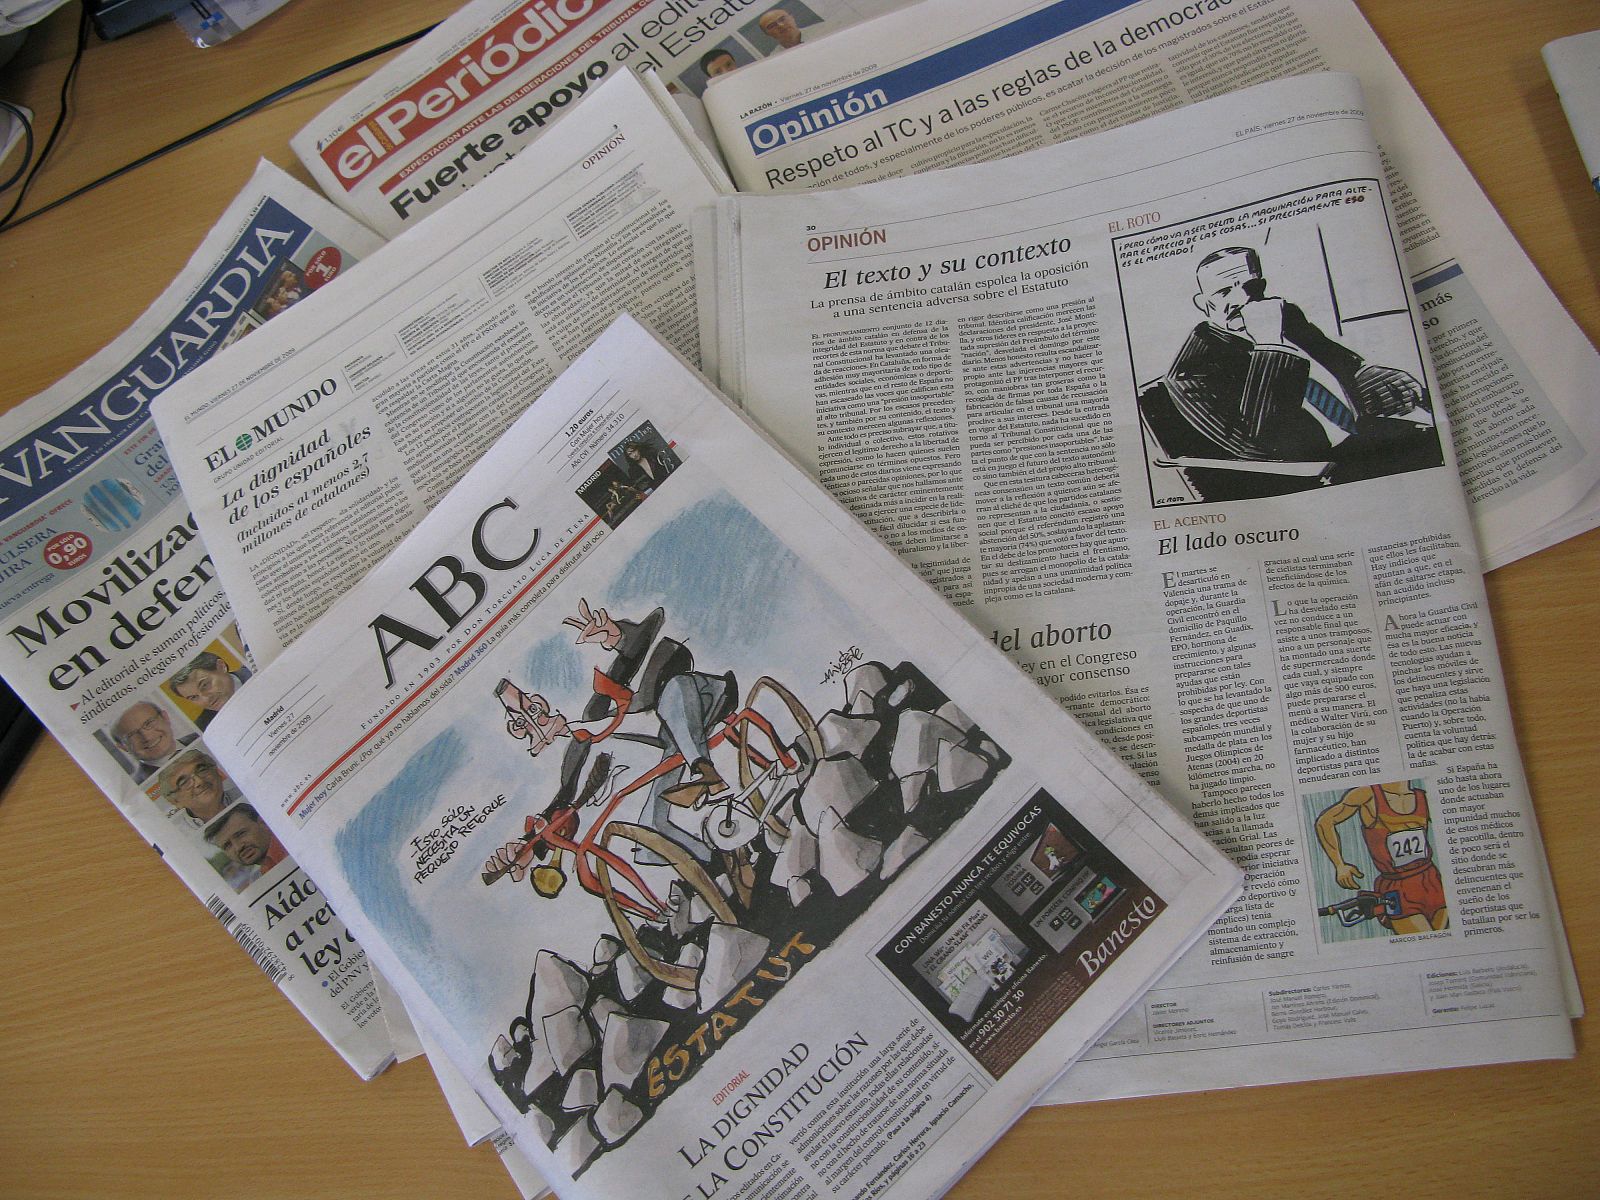 Periódicos como El Mundo, El País, ABC y La Razón responden al editorial catalán conjunto.